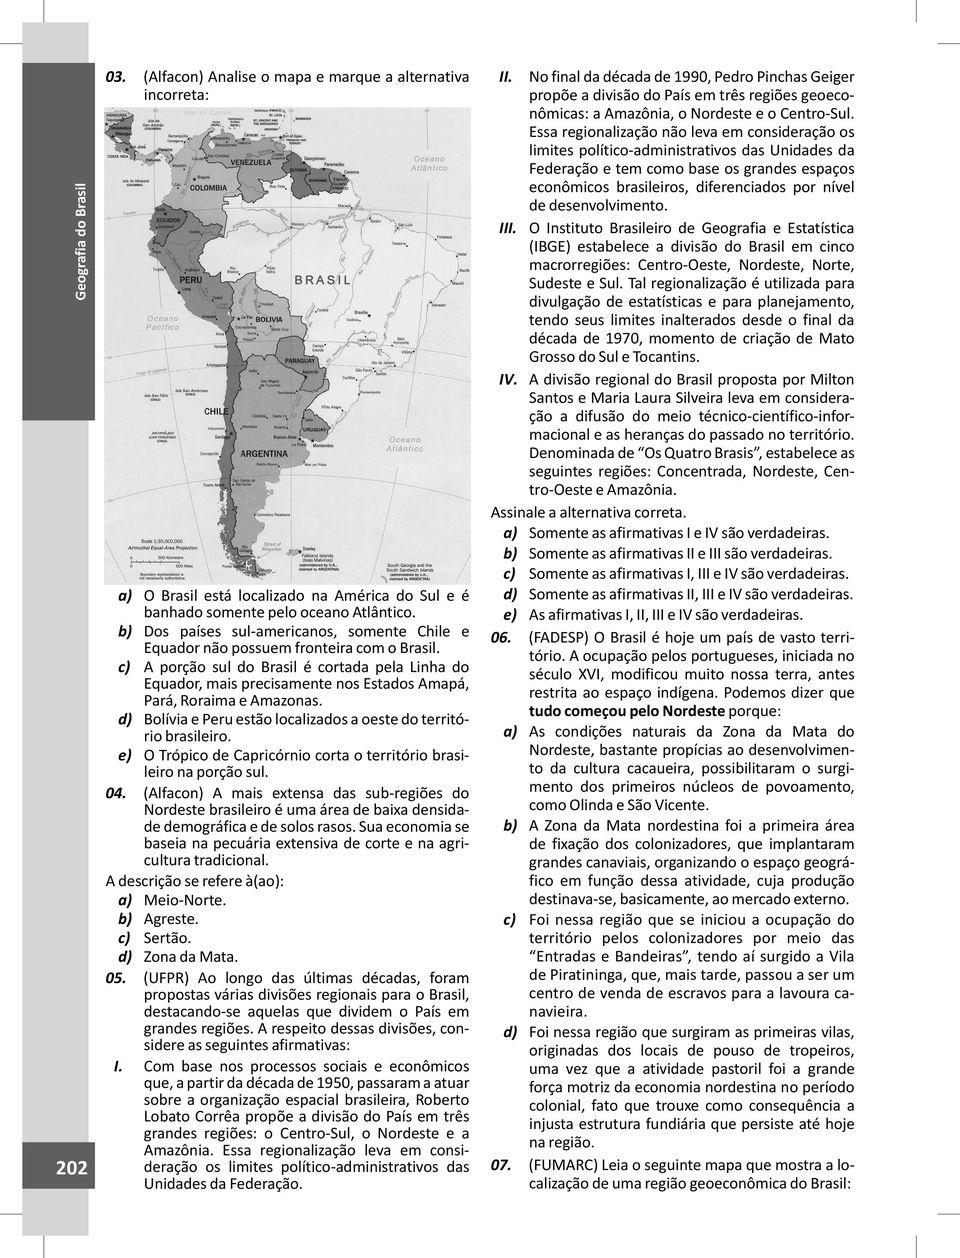 c) A porção sul do Brasil é cortada pela Linha do Equador, mais precisamente nos Estados Amapá, Pará, Roraima e Amazonas. d) Bolívia e Peru estão localizados a oeste do território brasileiro.